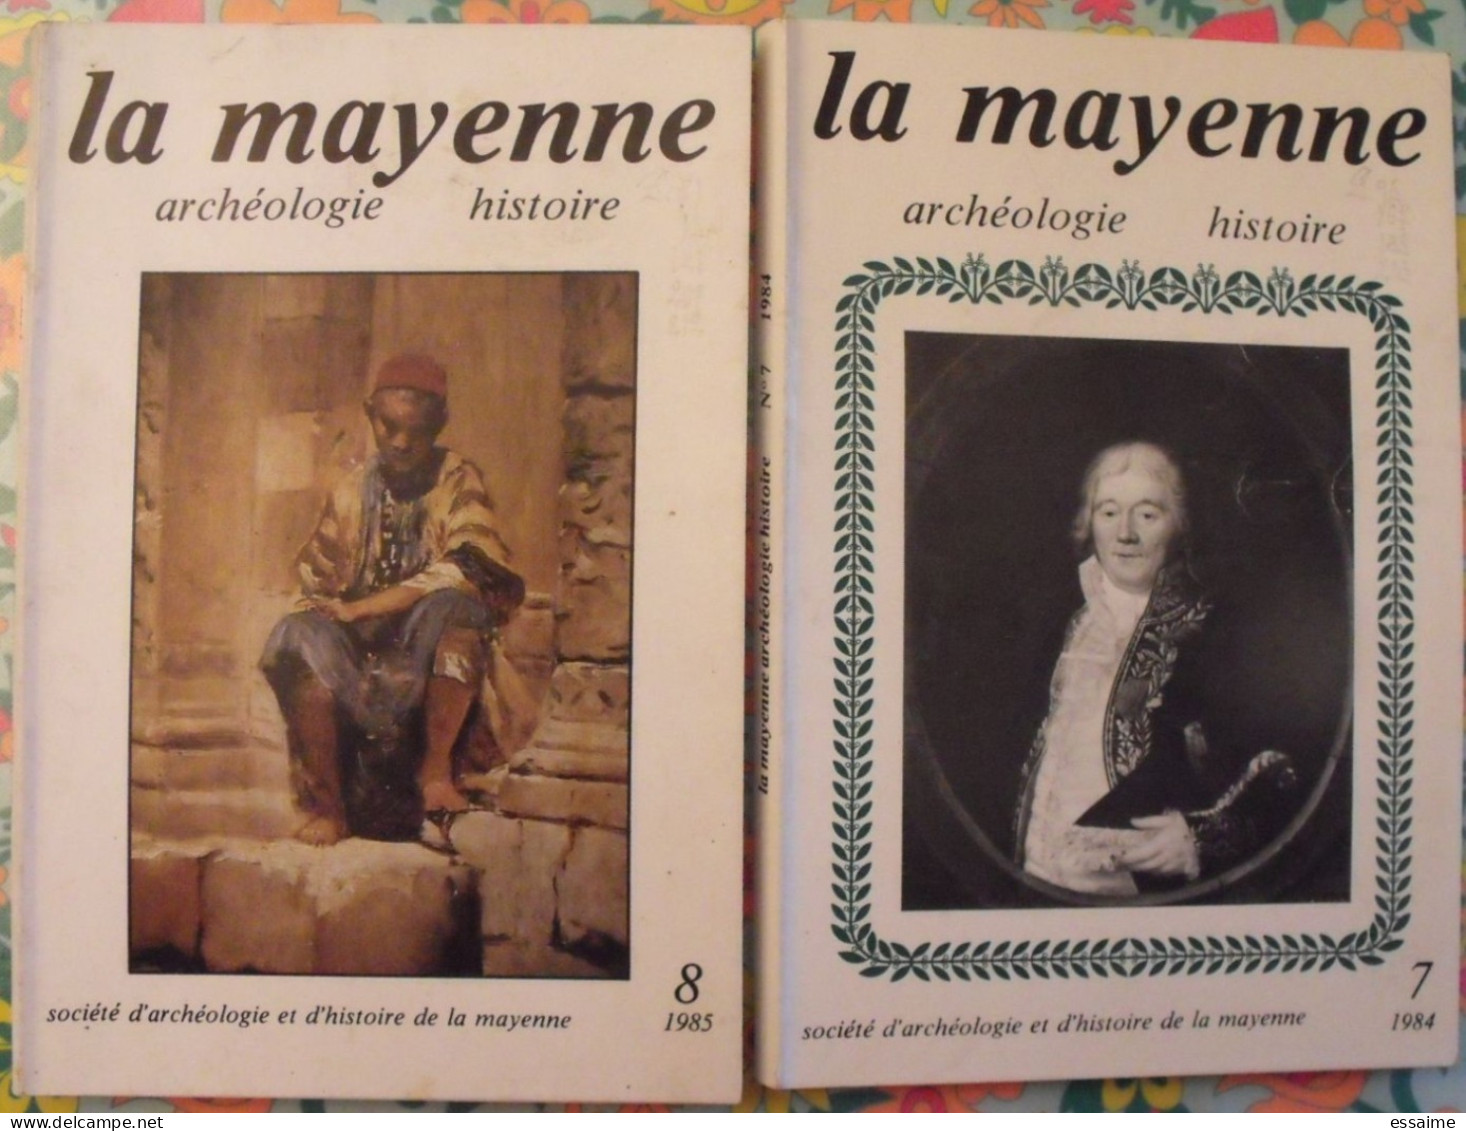 lot de 8 numéros de la revue "La Mayenne archéologie histoire" 1979-1985. rangevin vaiges rousseau craon jublains laval